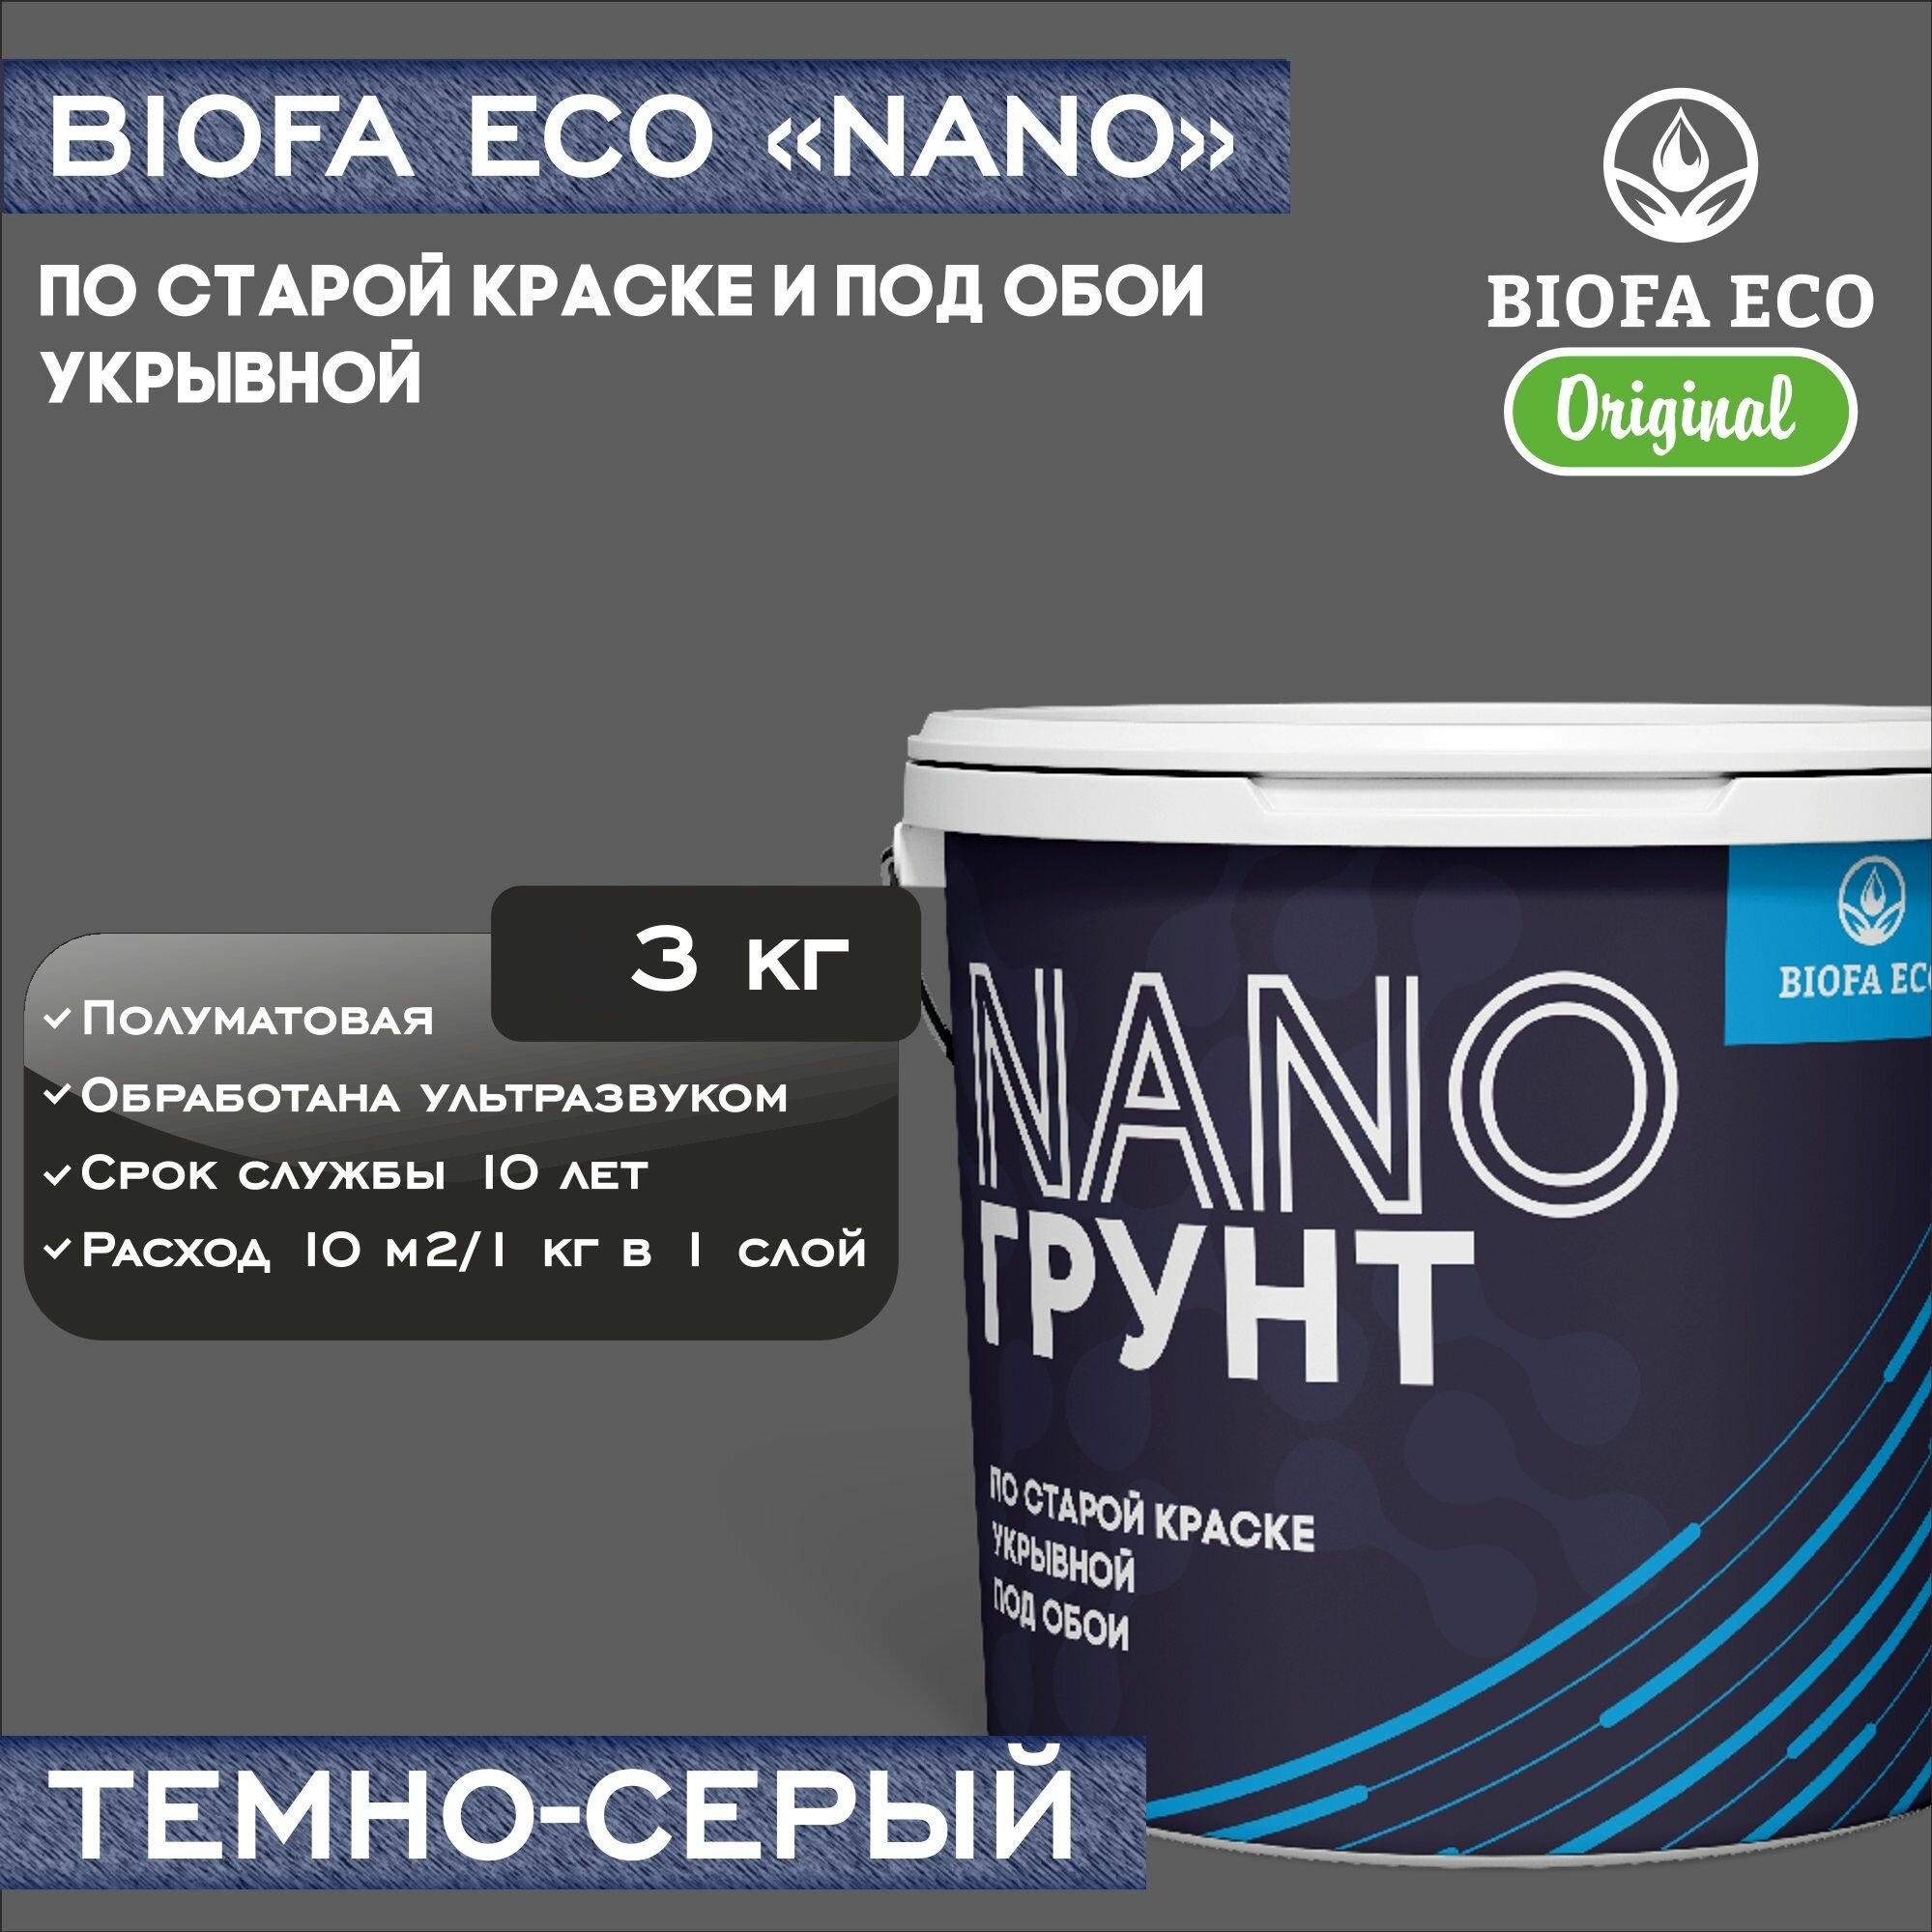 Грунт BIOFA ECO NANO укрывной под обои и по старой краске, адгезионный, цвет темно-серый, 3 кг